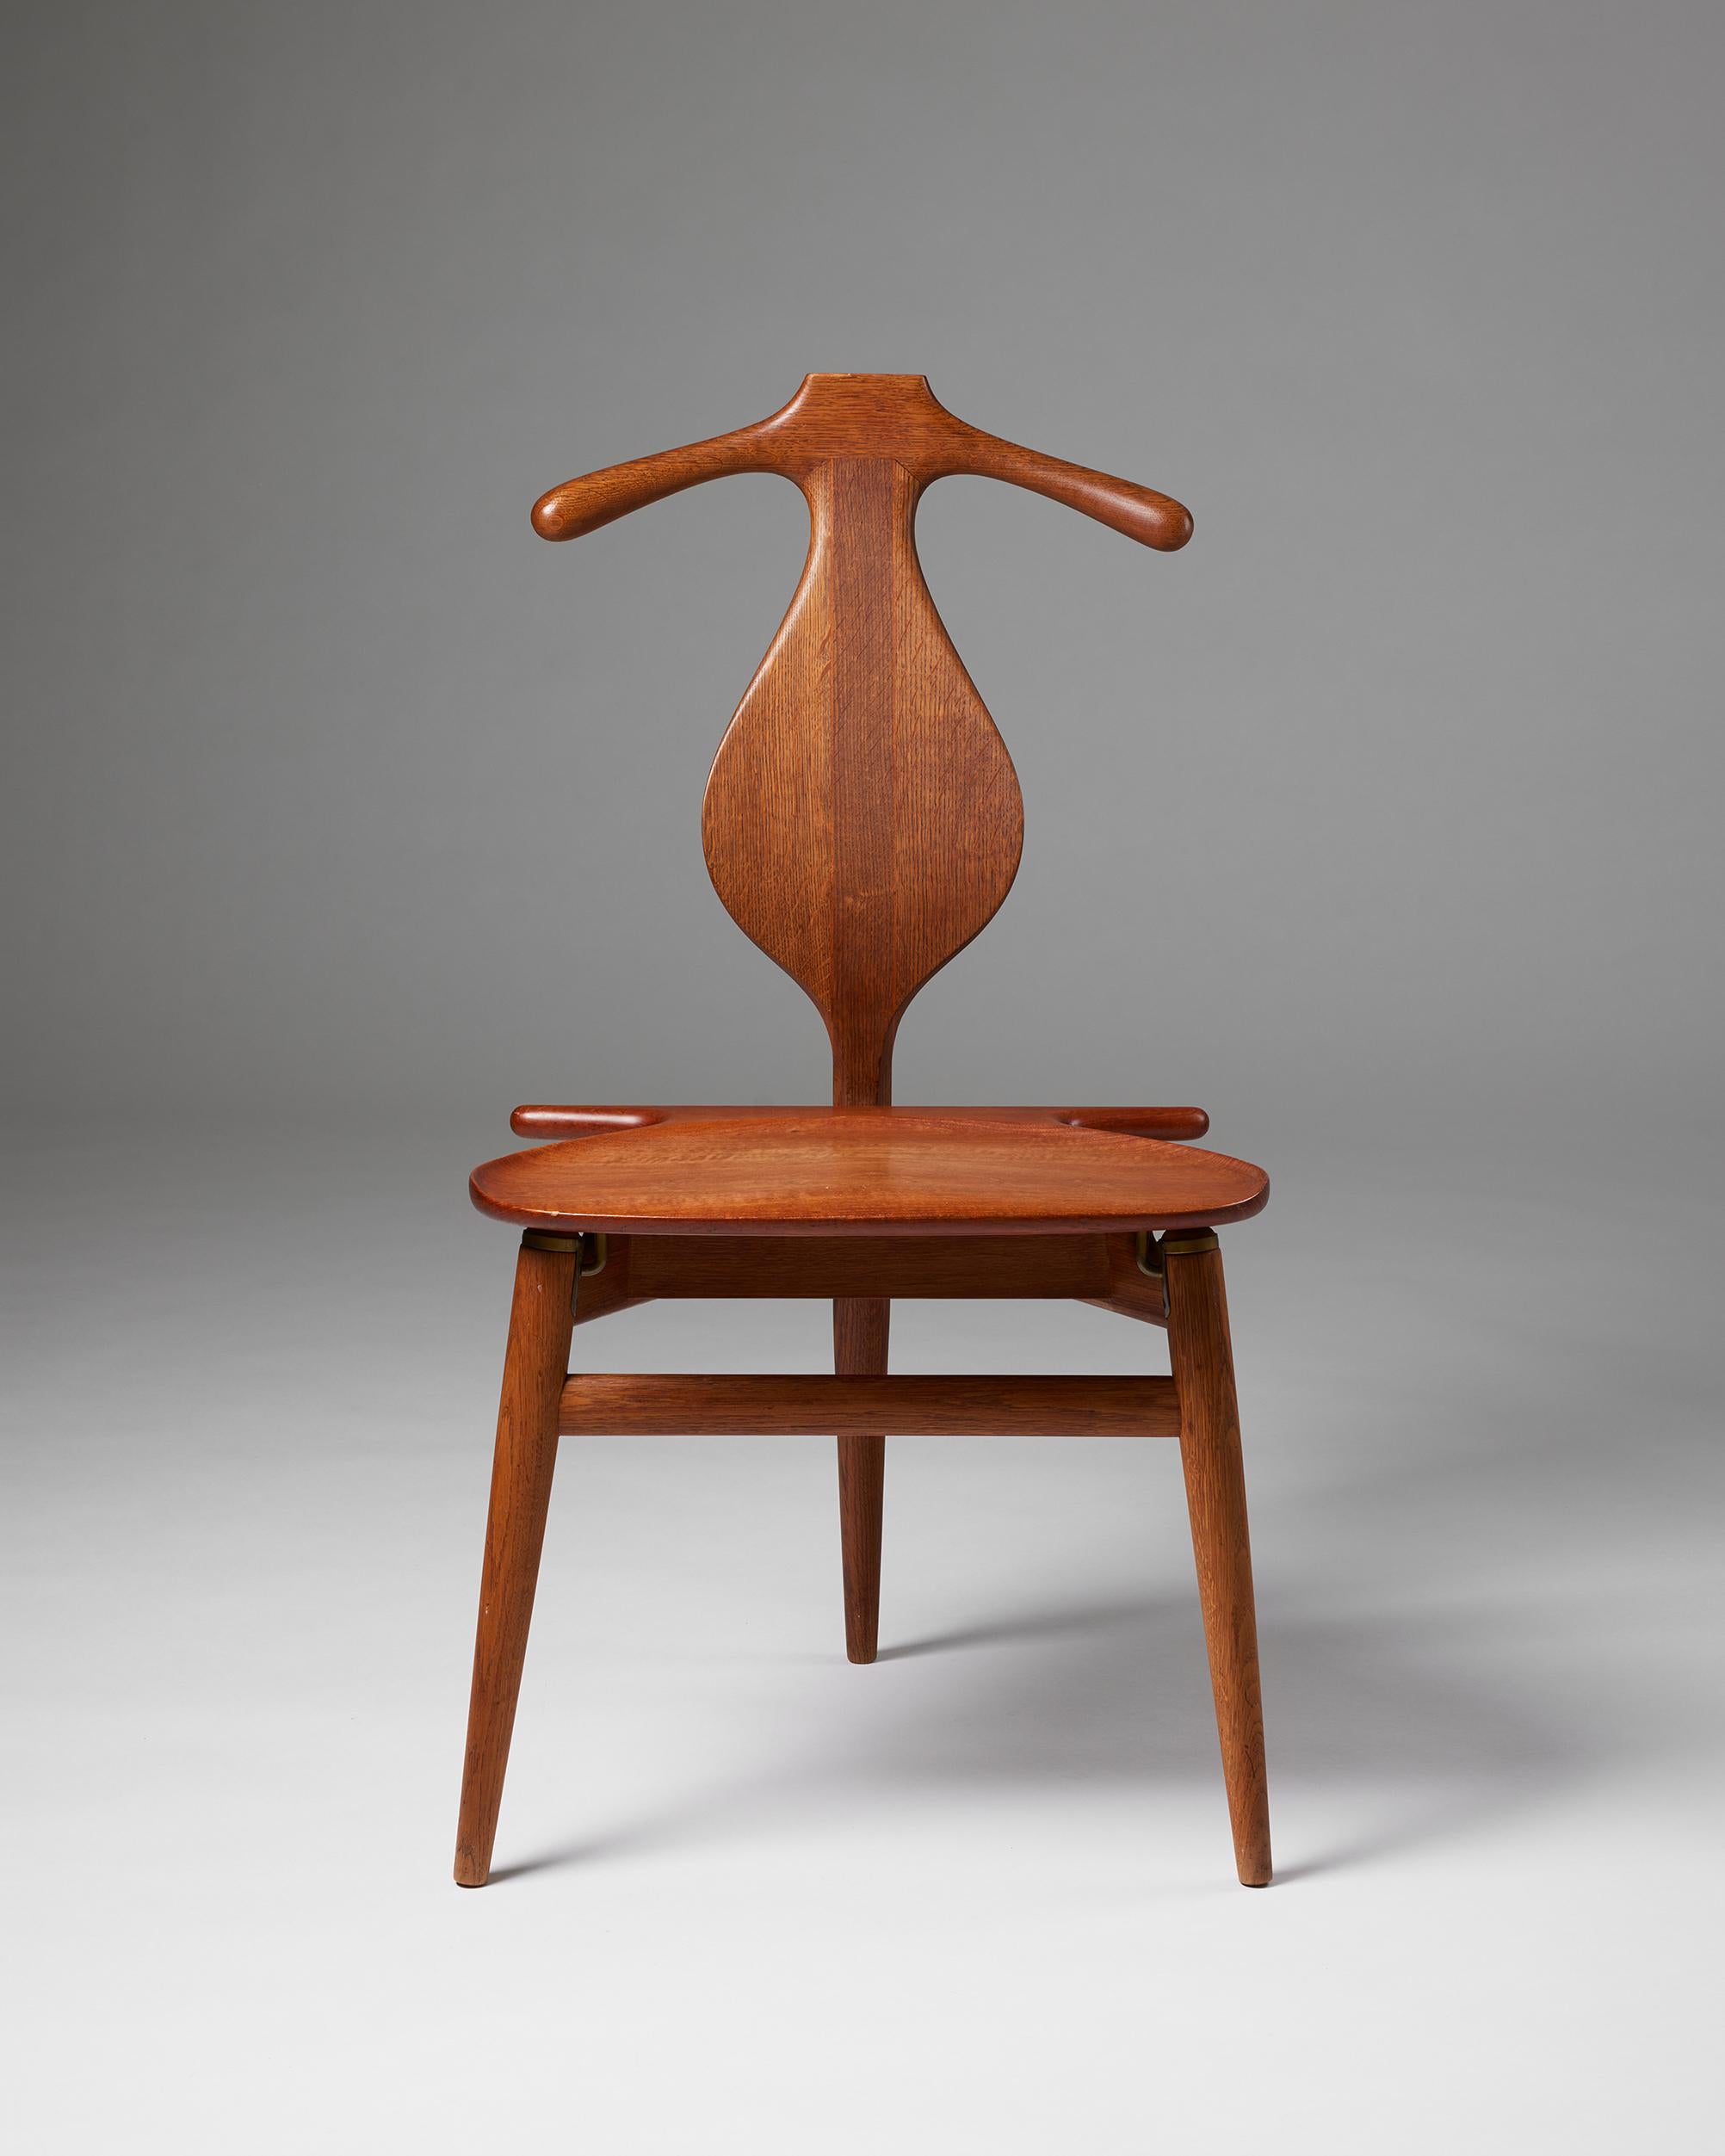 Valet-Stuhl Modell 540, entworfen von Hans J. Wegner für Johannes Jansen,
Dänemark, 1953.

Teak, Eiche und Messing.

Gestempelt.

H: 94 cm
B: 51 cm
T: 50 cm
SH: 44.5 cm

Hans J. Wegner ist der Vater des dänischen Designs und bekannt für die Kreation